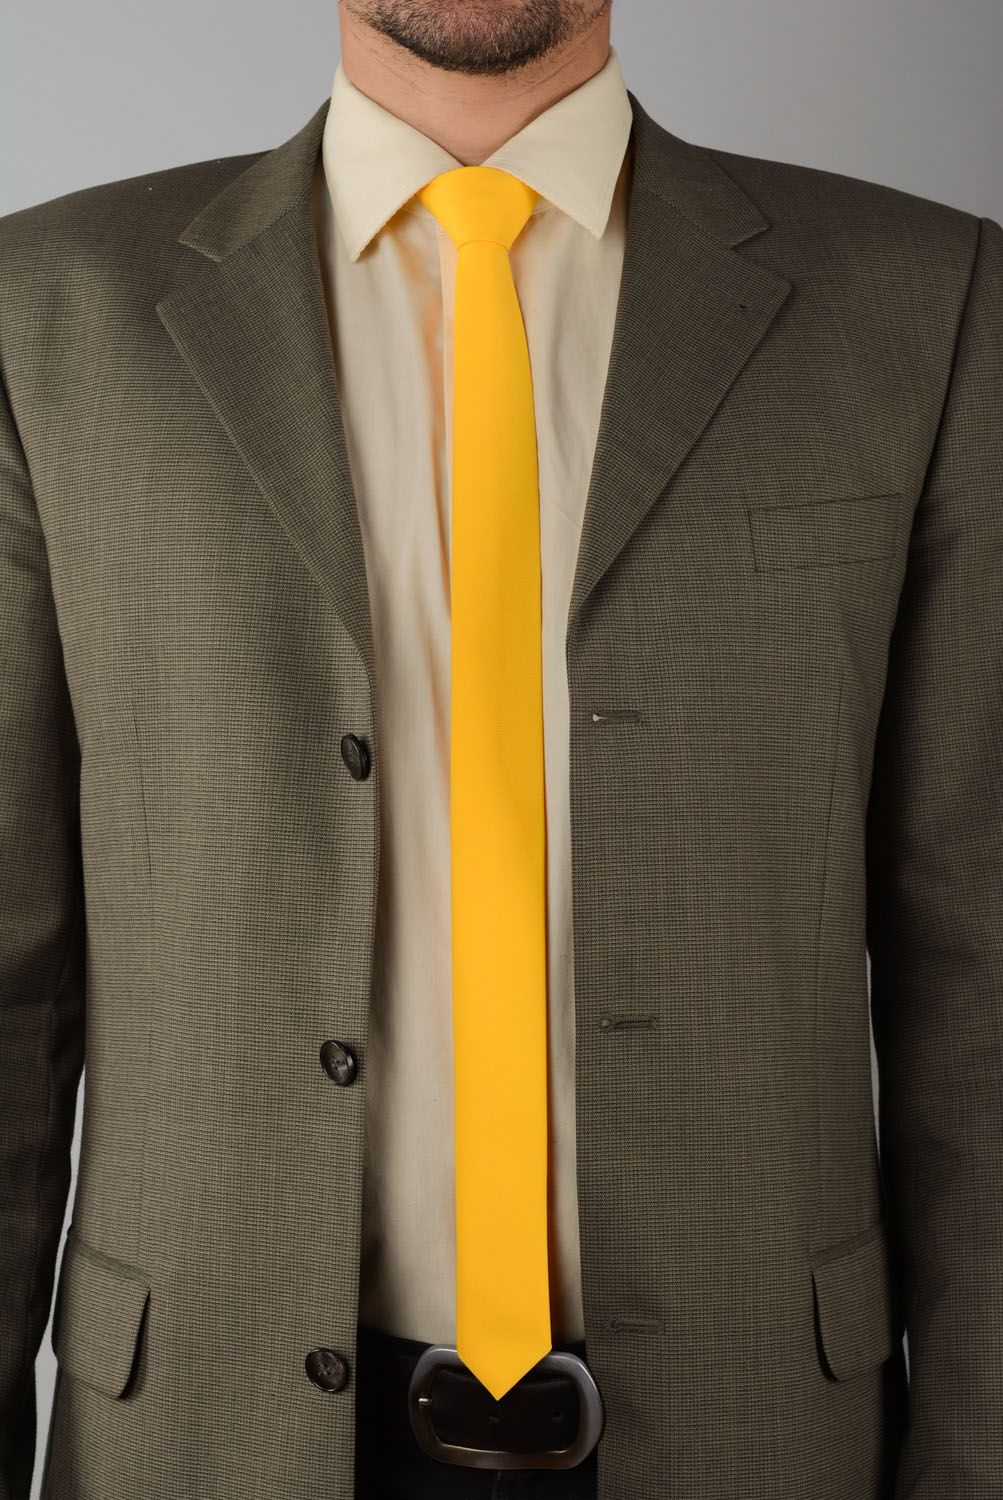 Cravate jaune en gabardine faite main photo 1